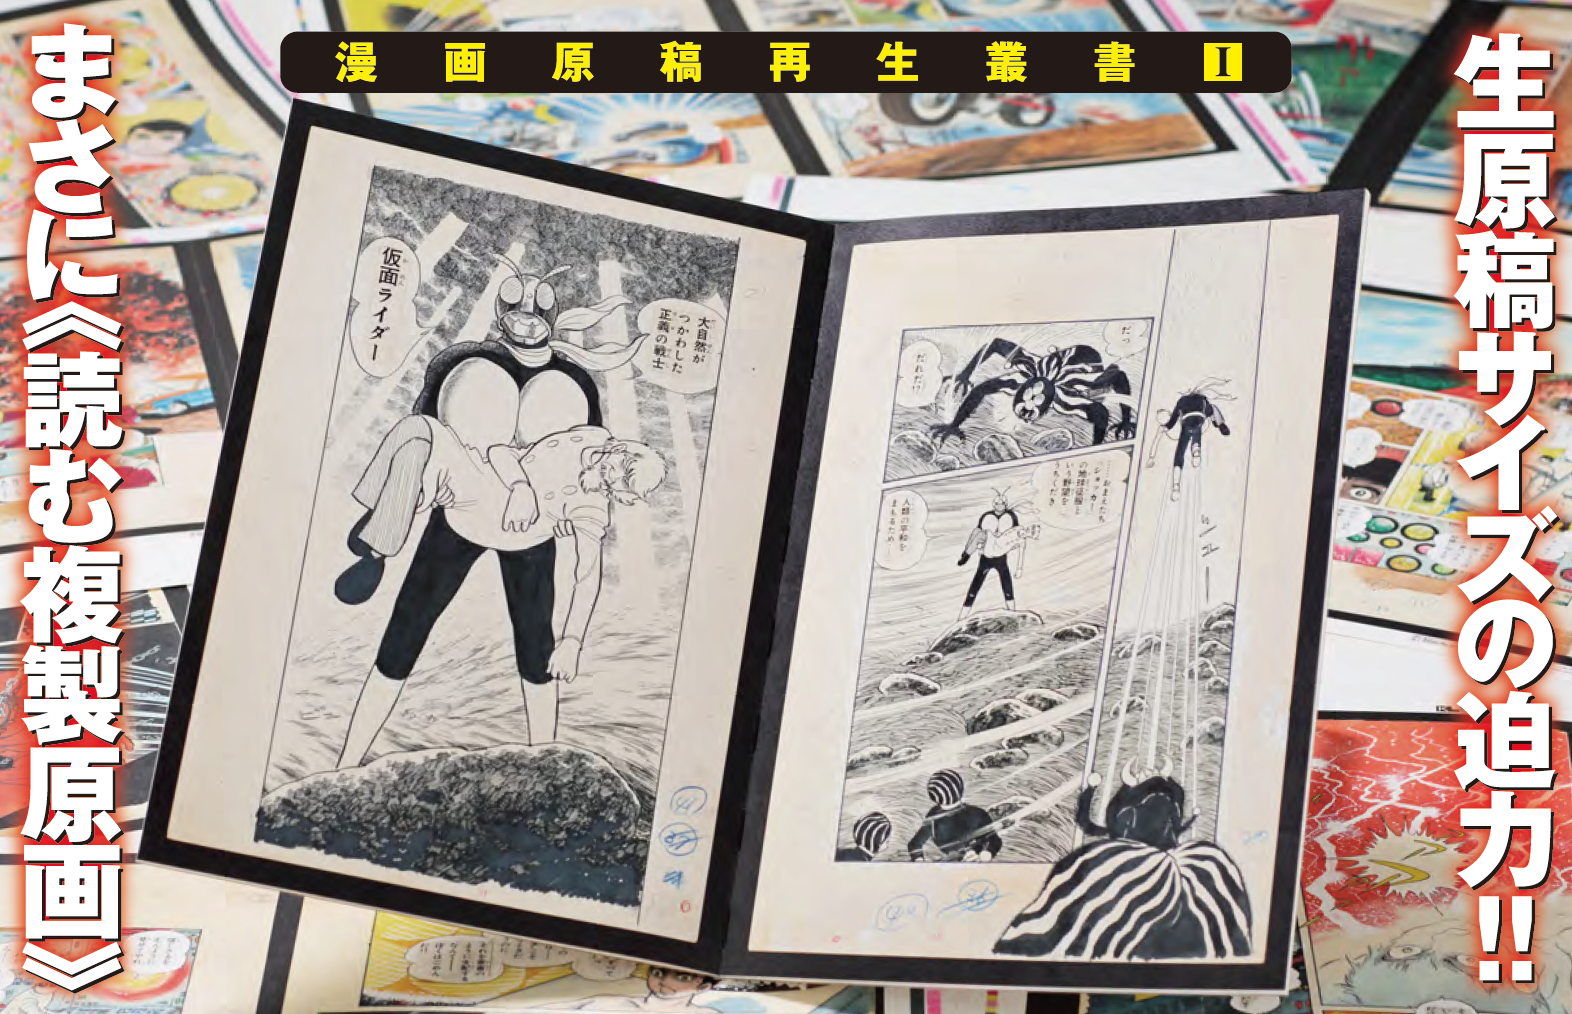 仮面ライダー 連載第1回 漫画原稿再生叢書 復刊ドットコム 石森プロ公式ホームページ